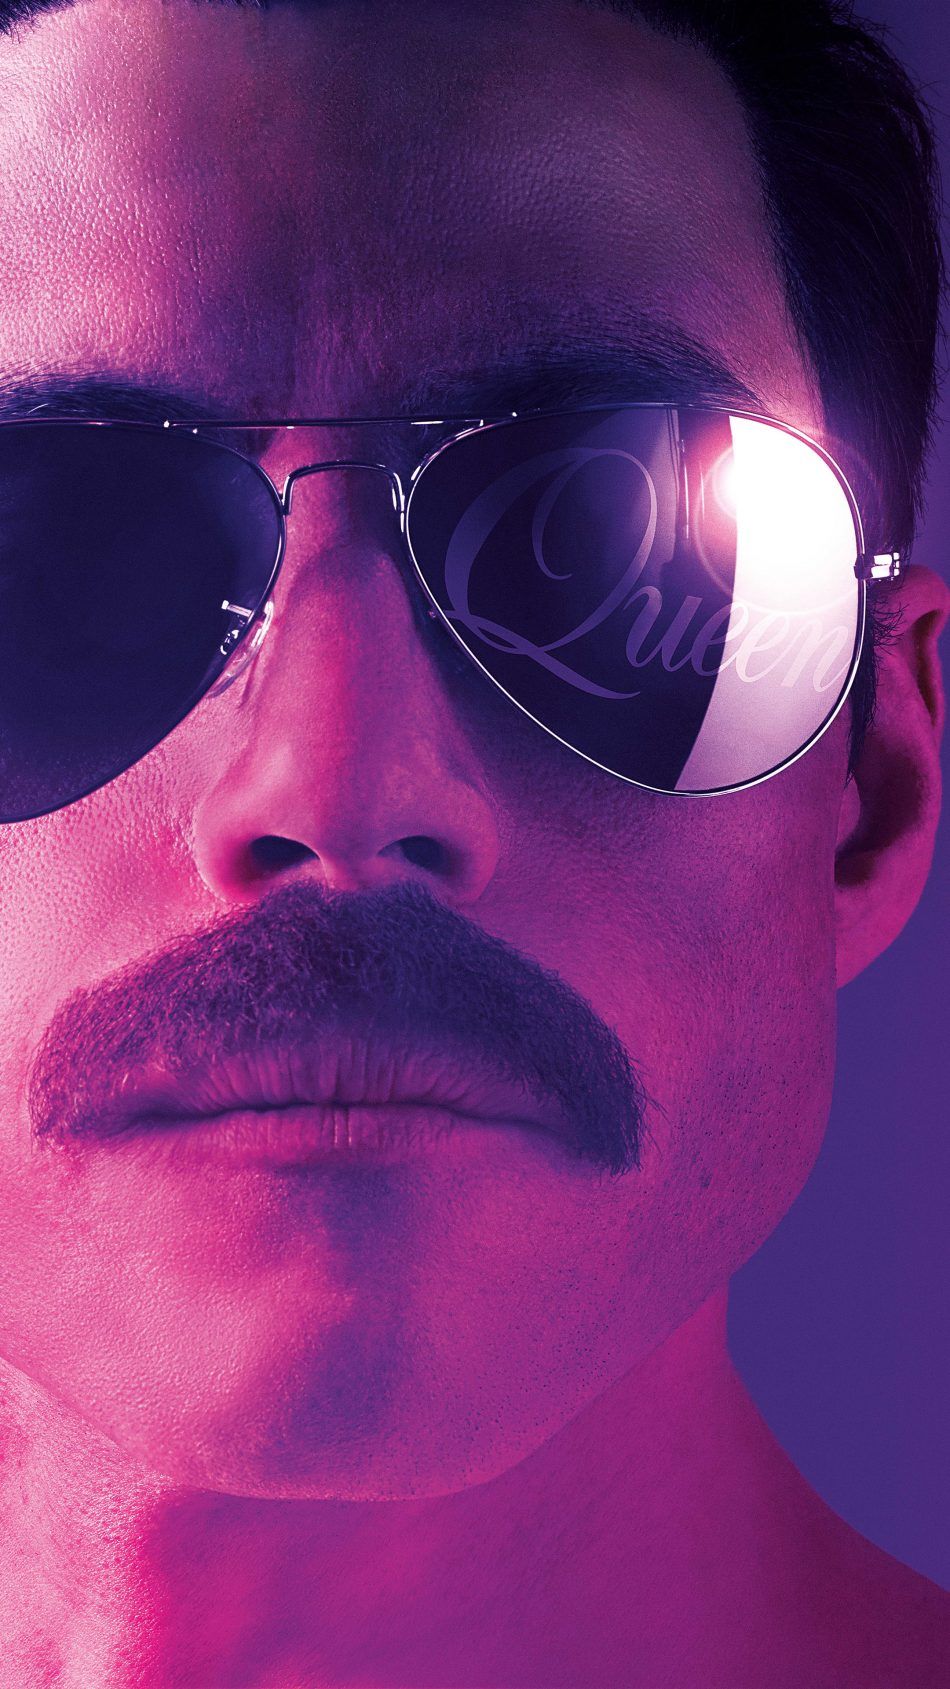 Hình nền phim Bohemian Rhapsody: Lấy cảm hứng từ câu chuyện có thật về cuộc đời của ca sĩ huyền thoại Freddie Mercury, Bohemian Rhapsody là một bộ phim tuyệt vời về ban nhạc Queen. Hãy xem hình nền phim nếu bạn muốn được đưa vào thế giới âm nhạc đỉnh cao với những giai điệu và biểu diễn đầy cảm xúc.